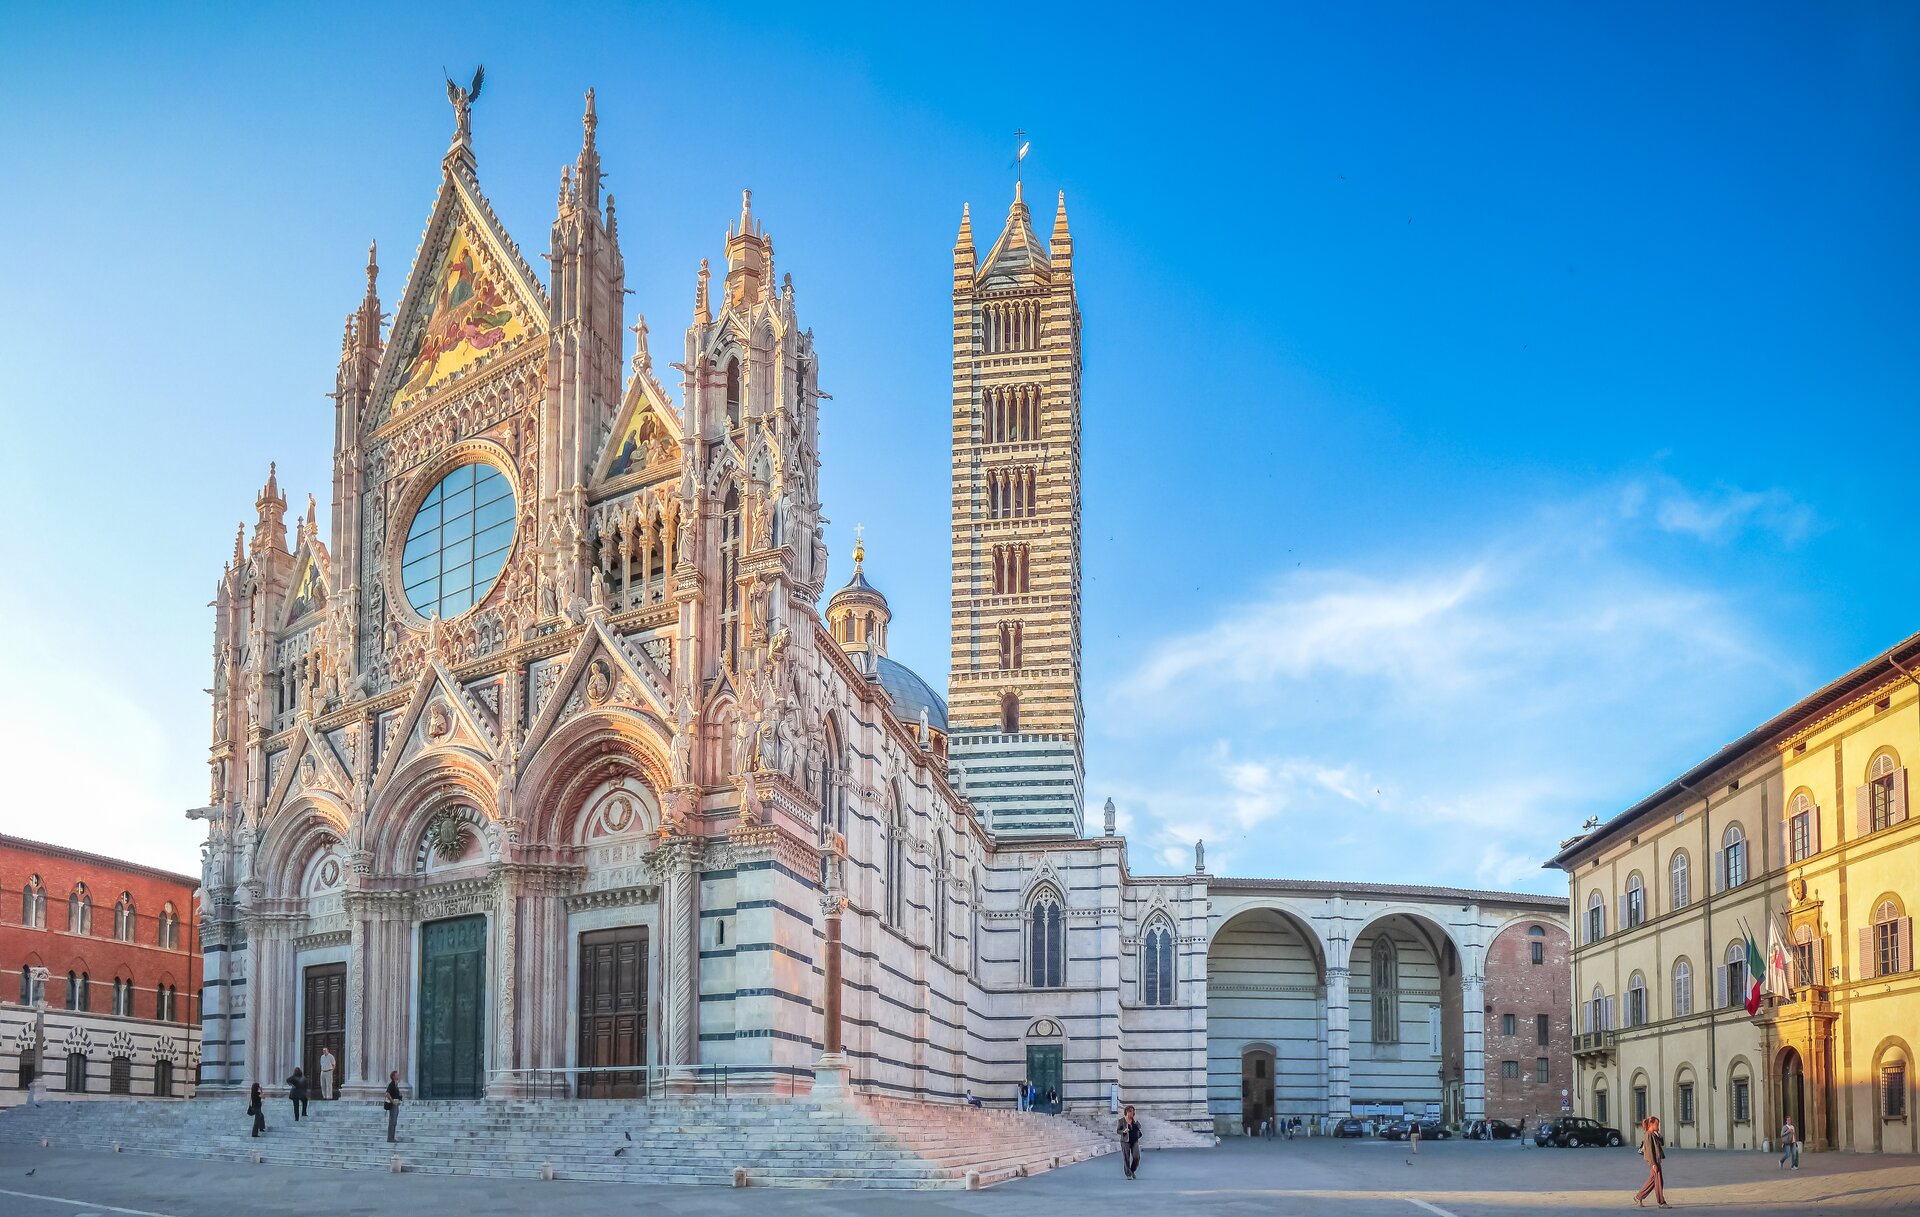 Ilustracja o kształcie poziomego prostokąta przedstawia fotografię Katedry w Sienie. Widok ukazuje katedrę od strony zachodnio-południowej. W portalu zachodnim znajdują się trzy wejścia z półokrągłym tympanonem, otoczonym archiwoltami i zwieńczonym trójkątnym przyczółkiem.  Ściana frontowa zamknięta jest od góry trójkątnym zwieńczeniem z dekoracją rzeźbiarską i wieżyczkami, znajdującymi się po bokach. Wieżyczki znajdują się także na obrzeżach. W fasadzie widoczne są poziome podziały ściany. Po prawej stronie ukazany jest fragment transeptu oraz dwie wysokie, kwadratowe wieże. Do kościoła dostawiony jest budynek z arkadami. Po bokach kościoła widoczna jest zabudowa miejska.